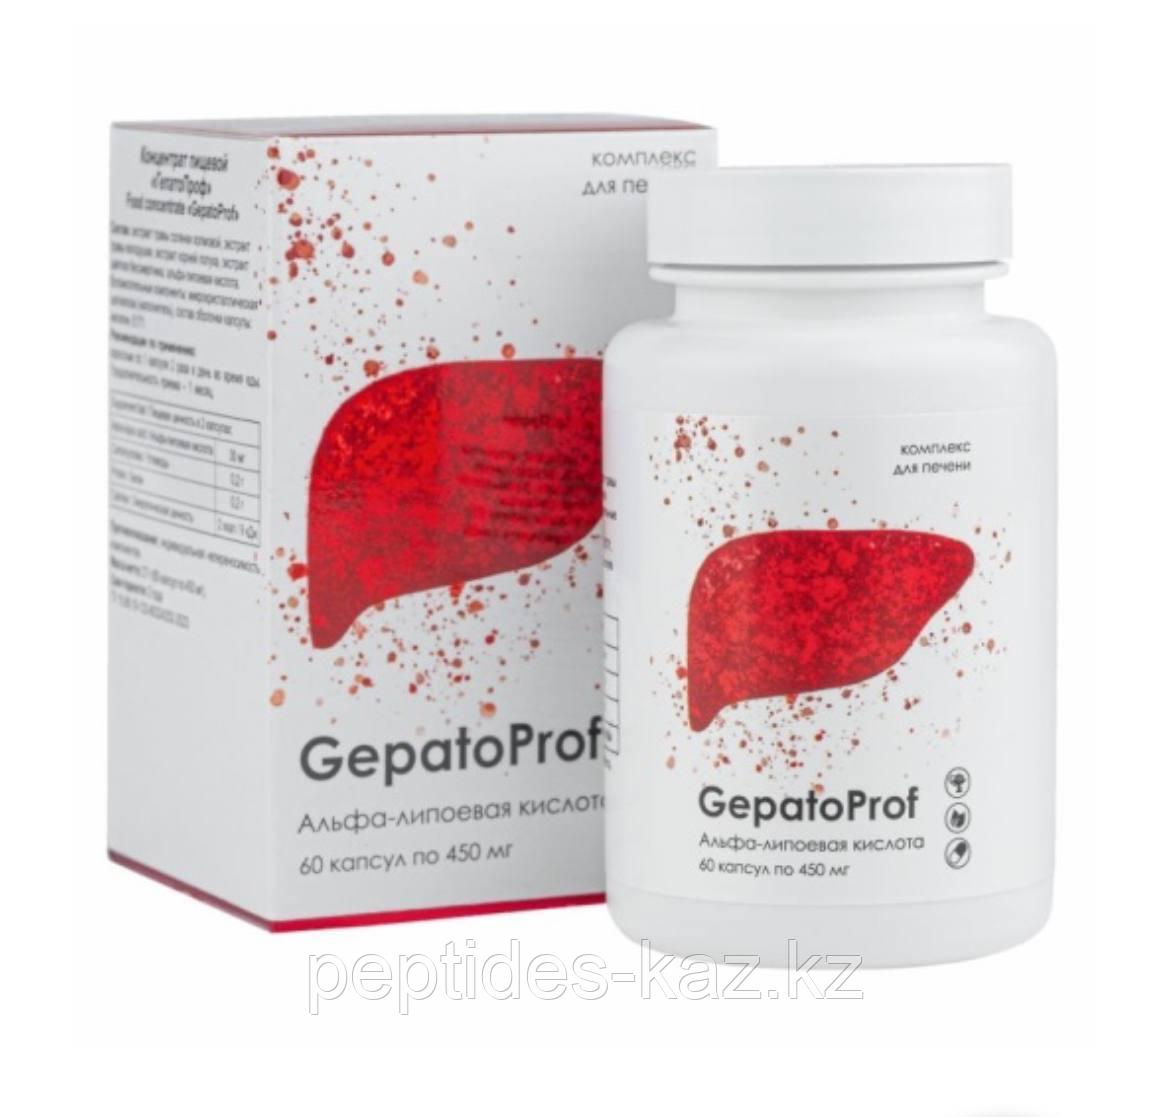 GEPATOPROF №60, ГепатоПроф с альфа-липоевой кислотой